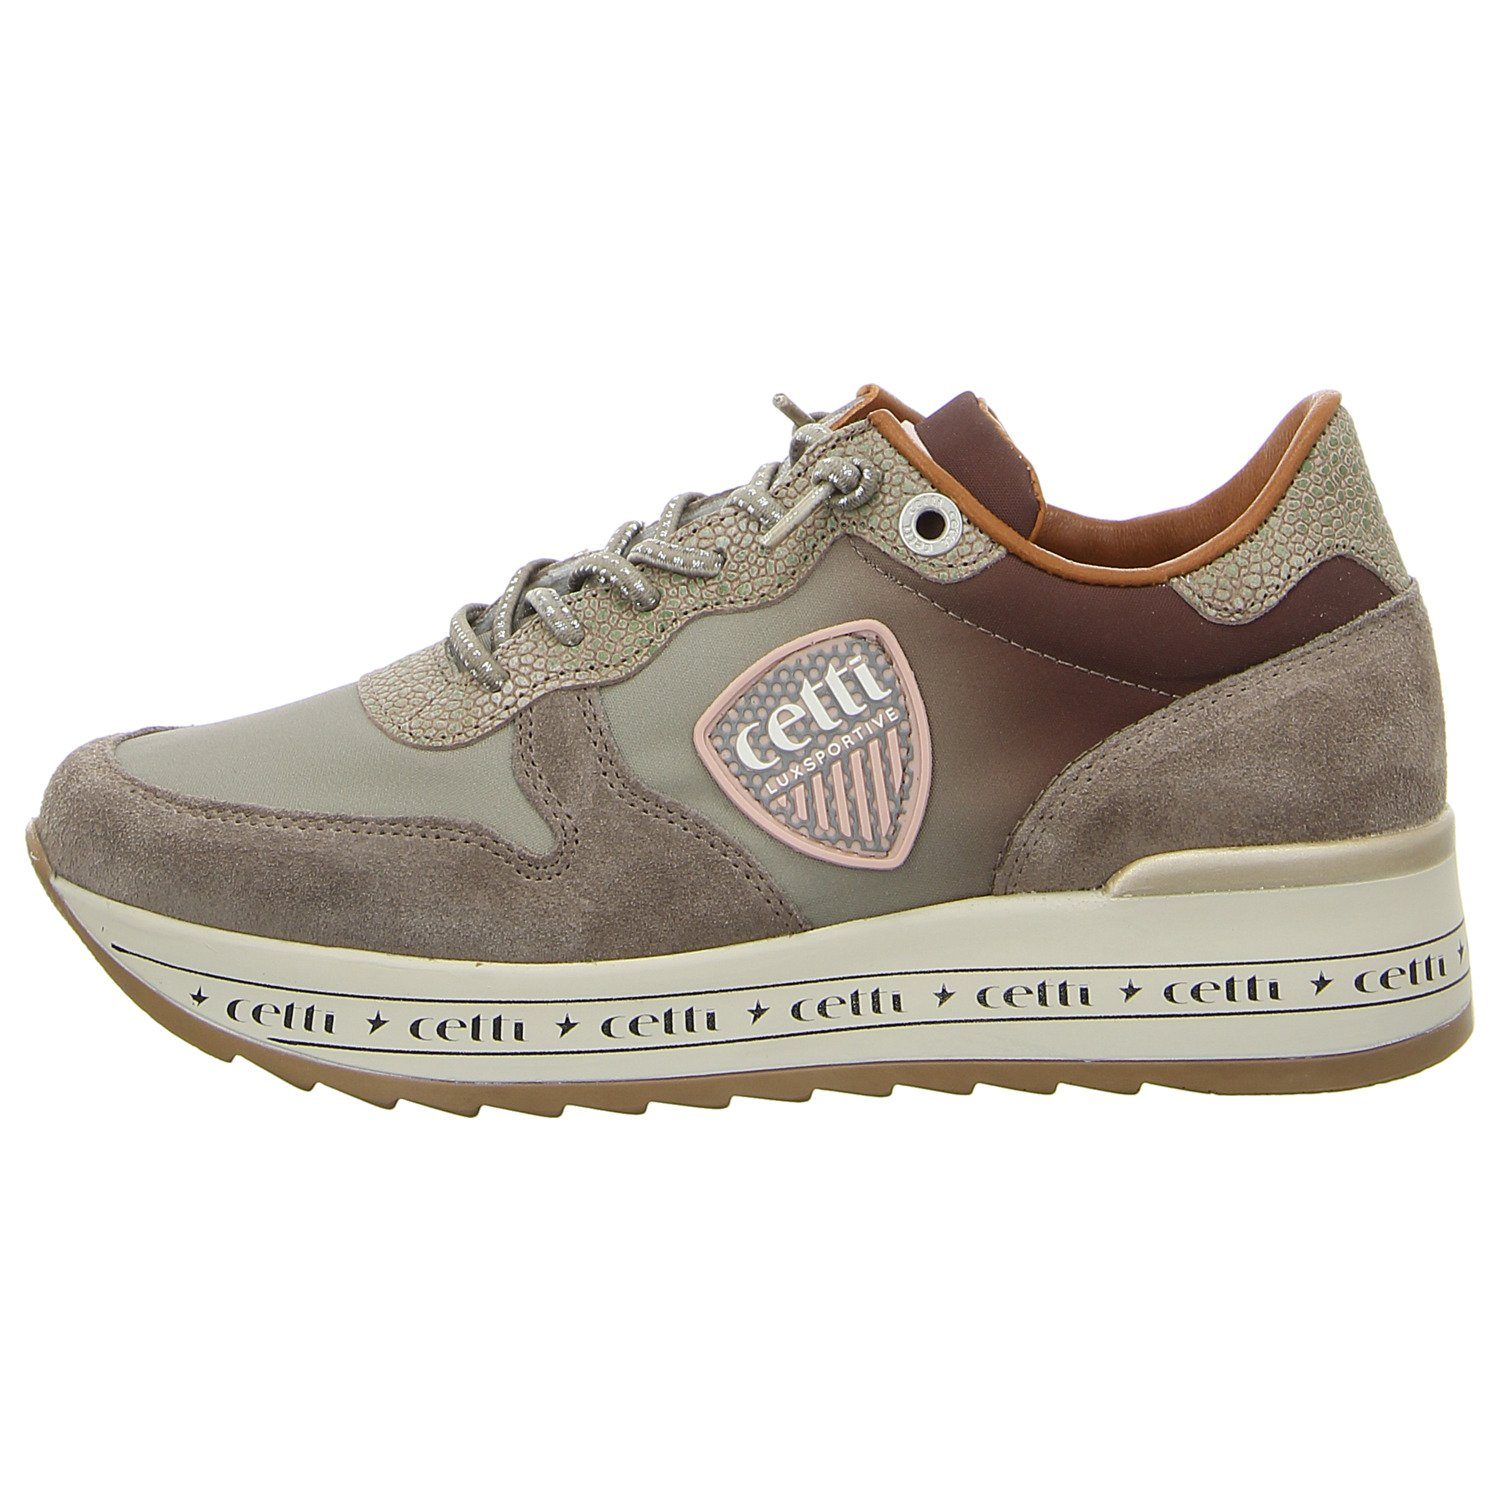 SRA Cetti C1251 Sneaker